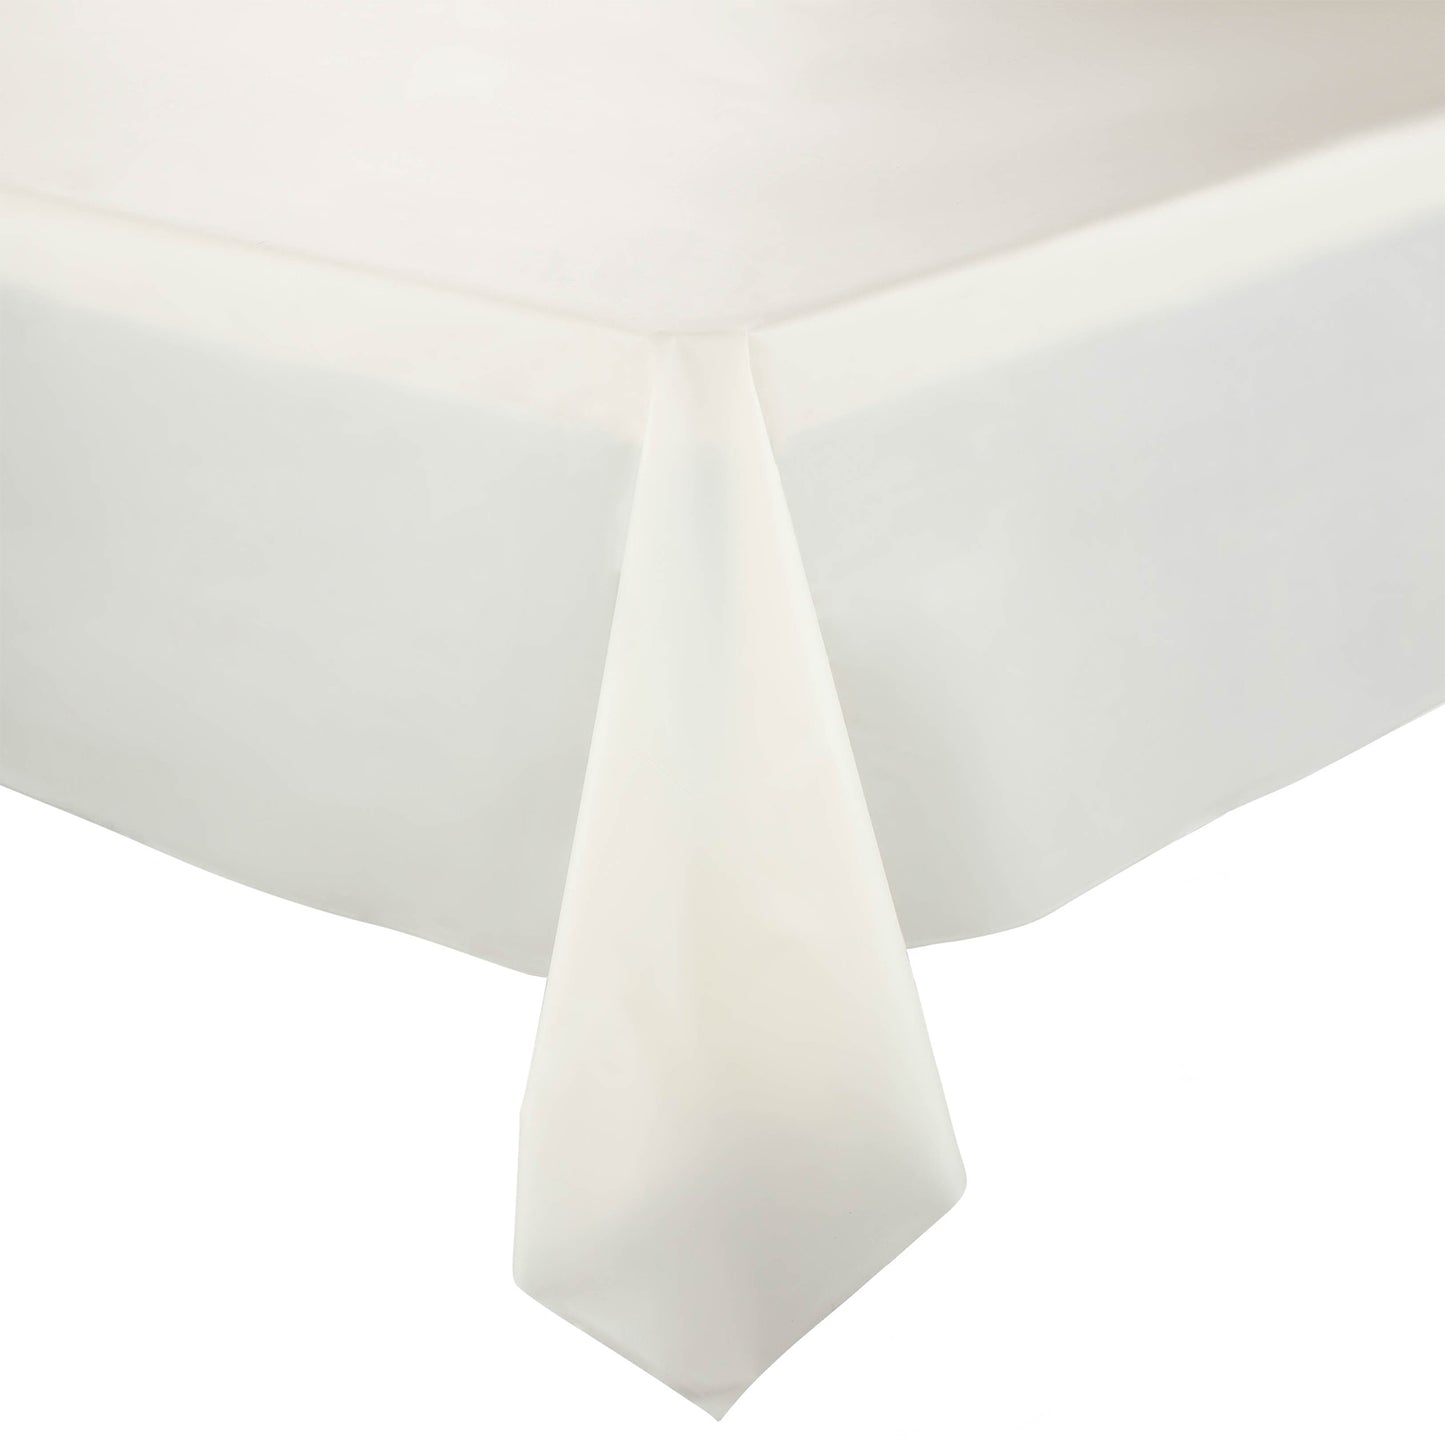 Ivory Rectangular Plastic Tablecloths (54" x 108")